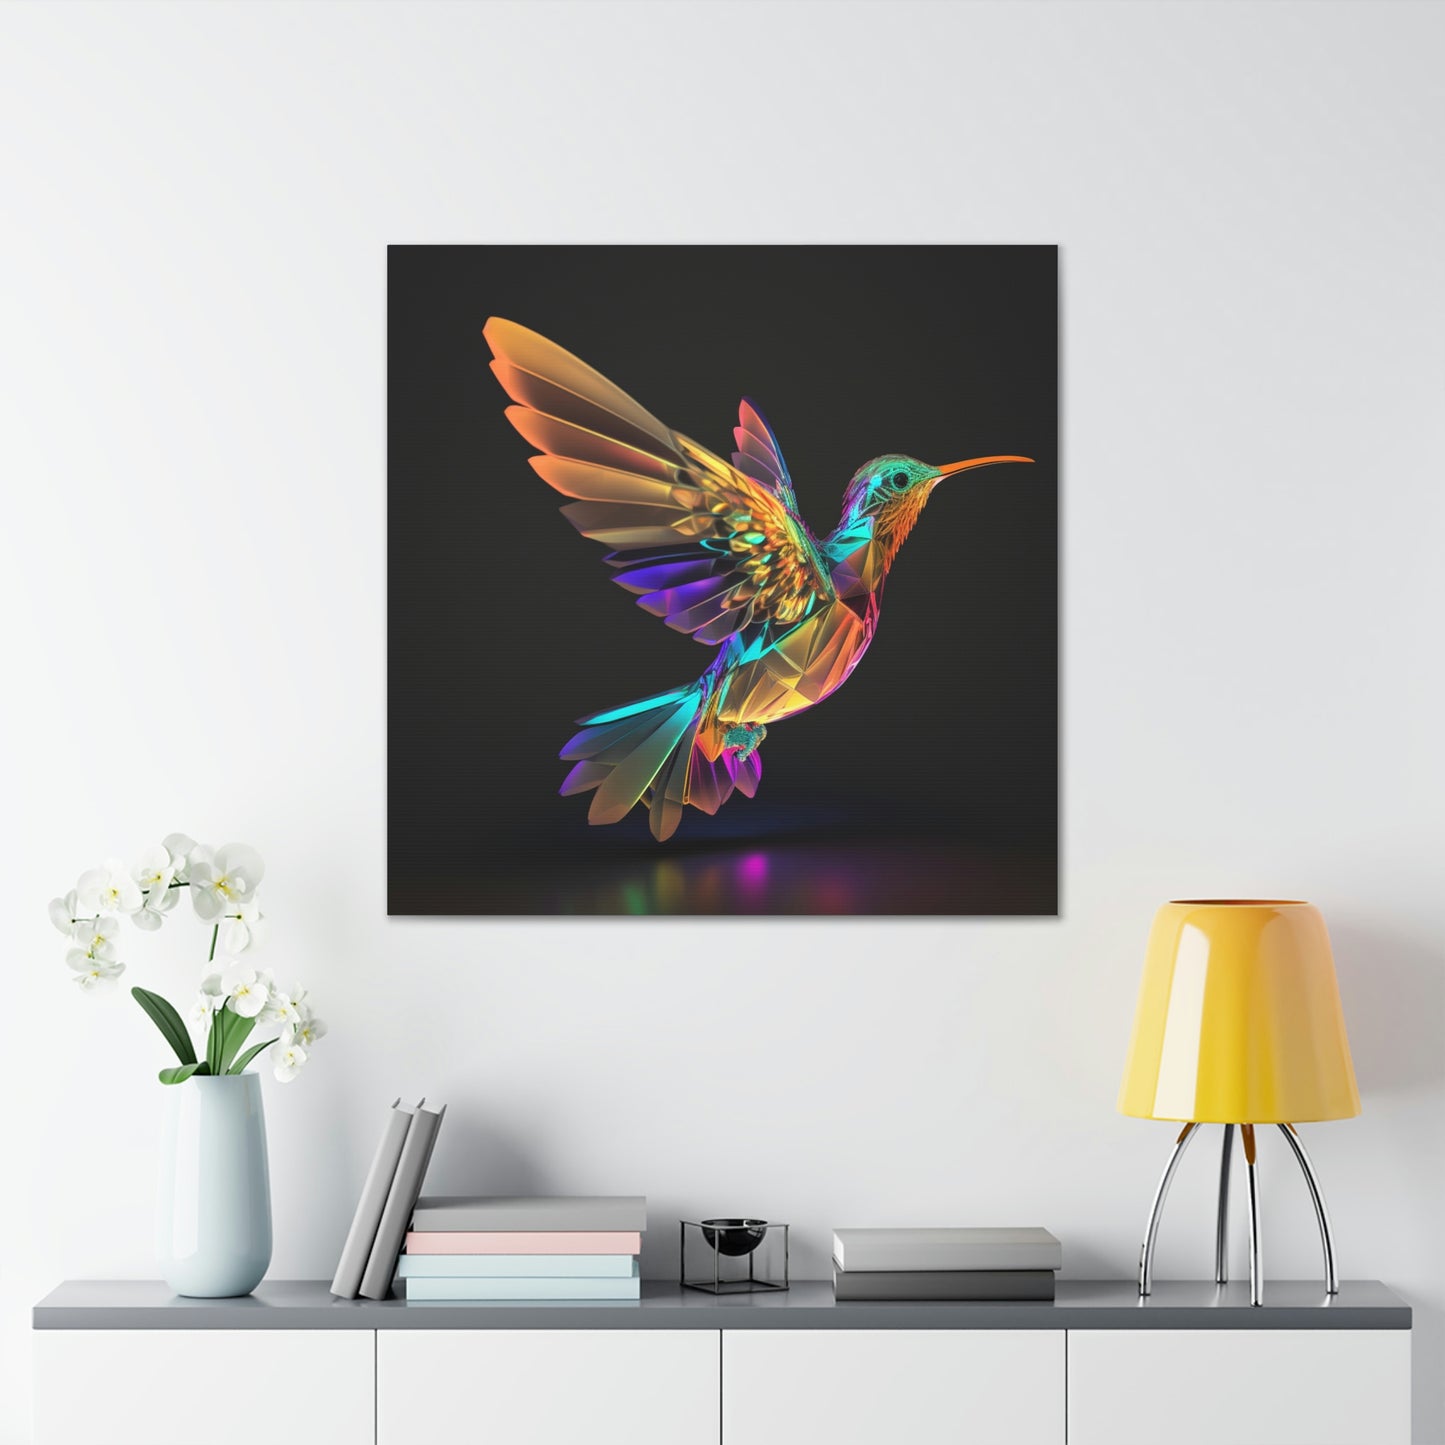 Hummingbird glass florescent glow